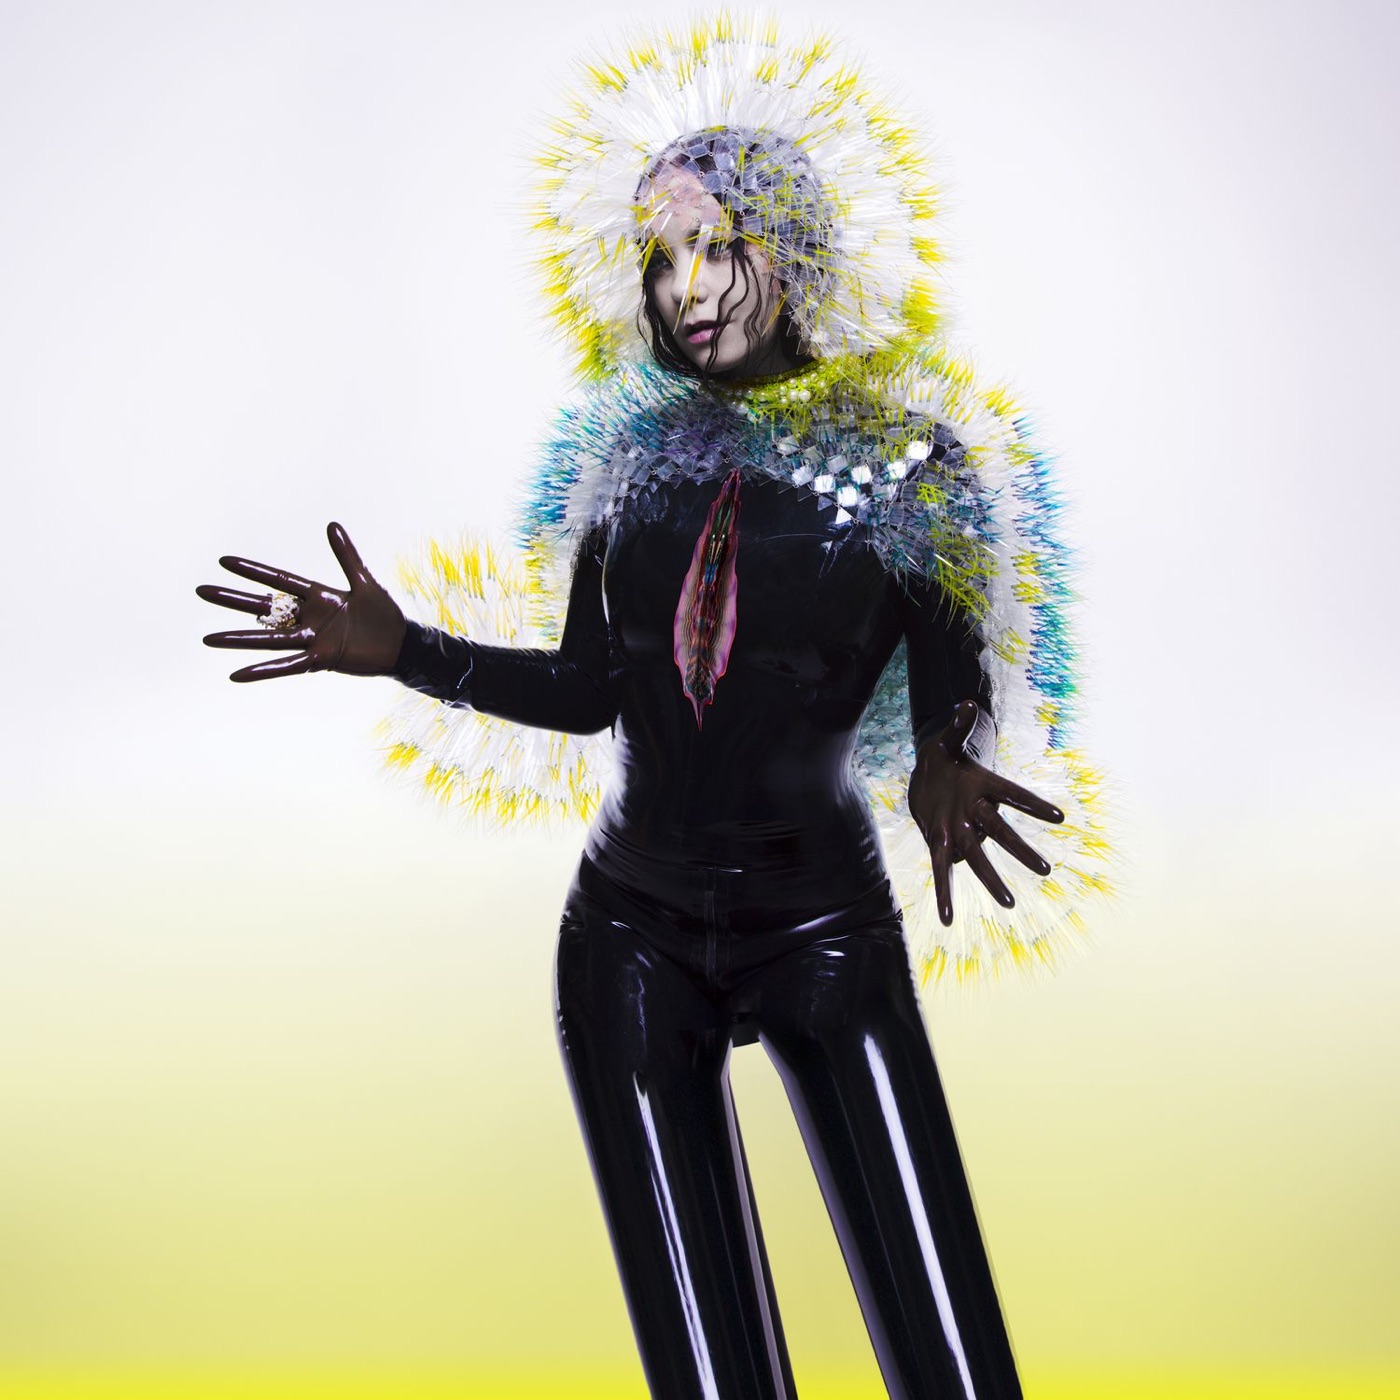 Vulnicura by Björk